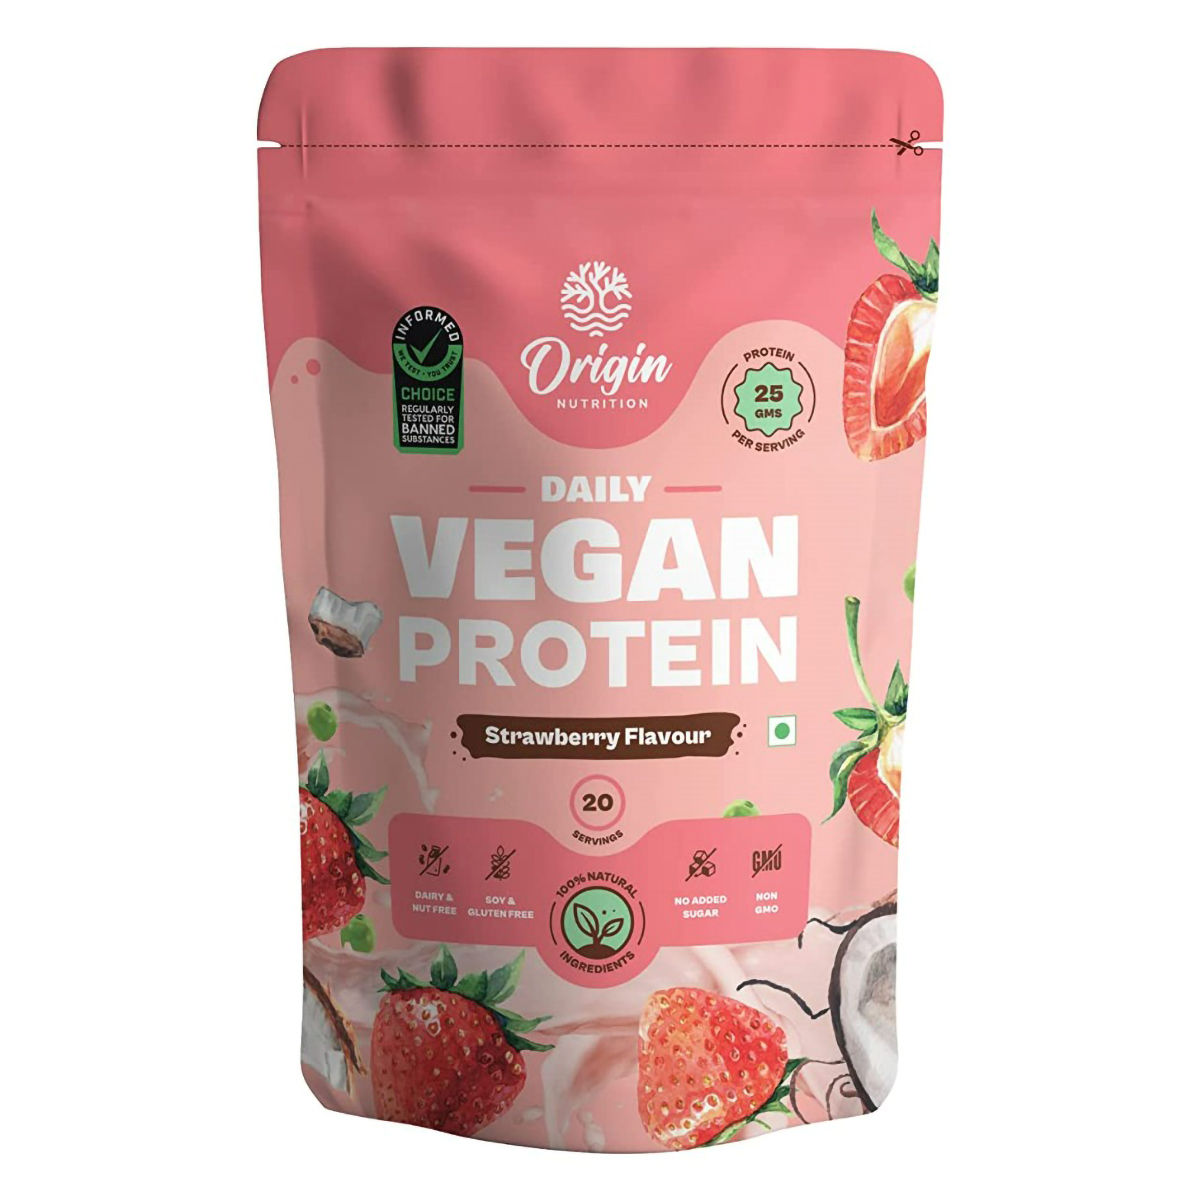 Buy Origin Nutrition 100% Natural Vegan Protein Strawberry Flavour Powder, 830 gm Online